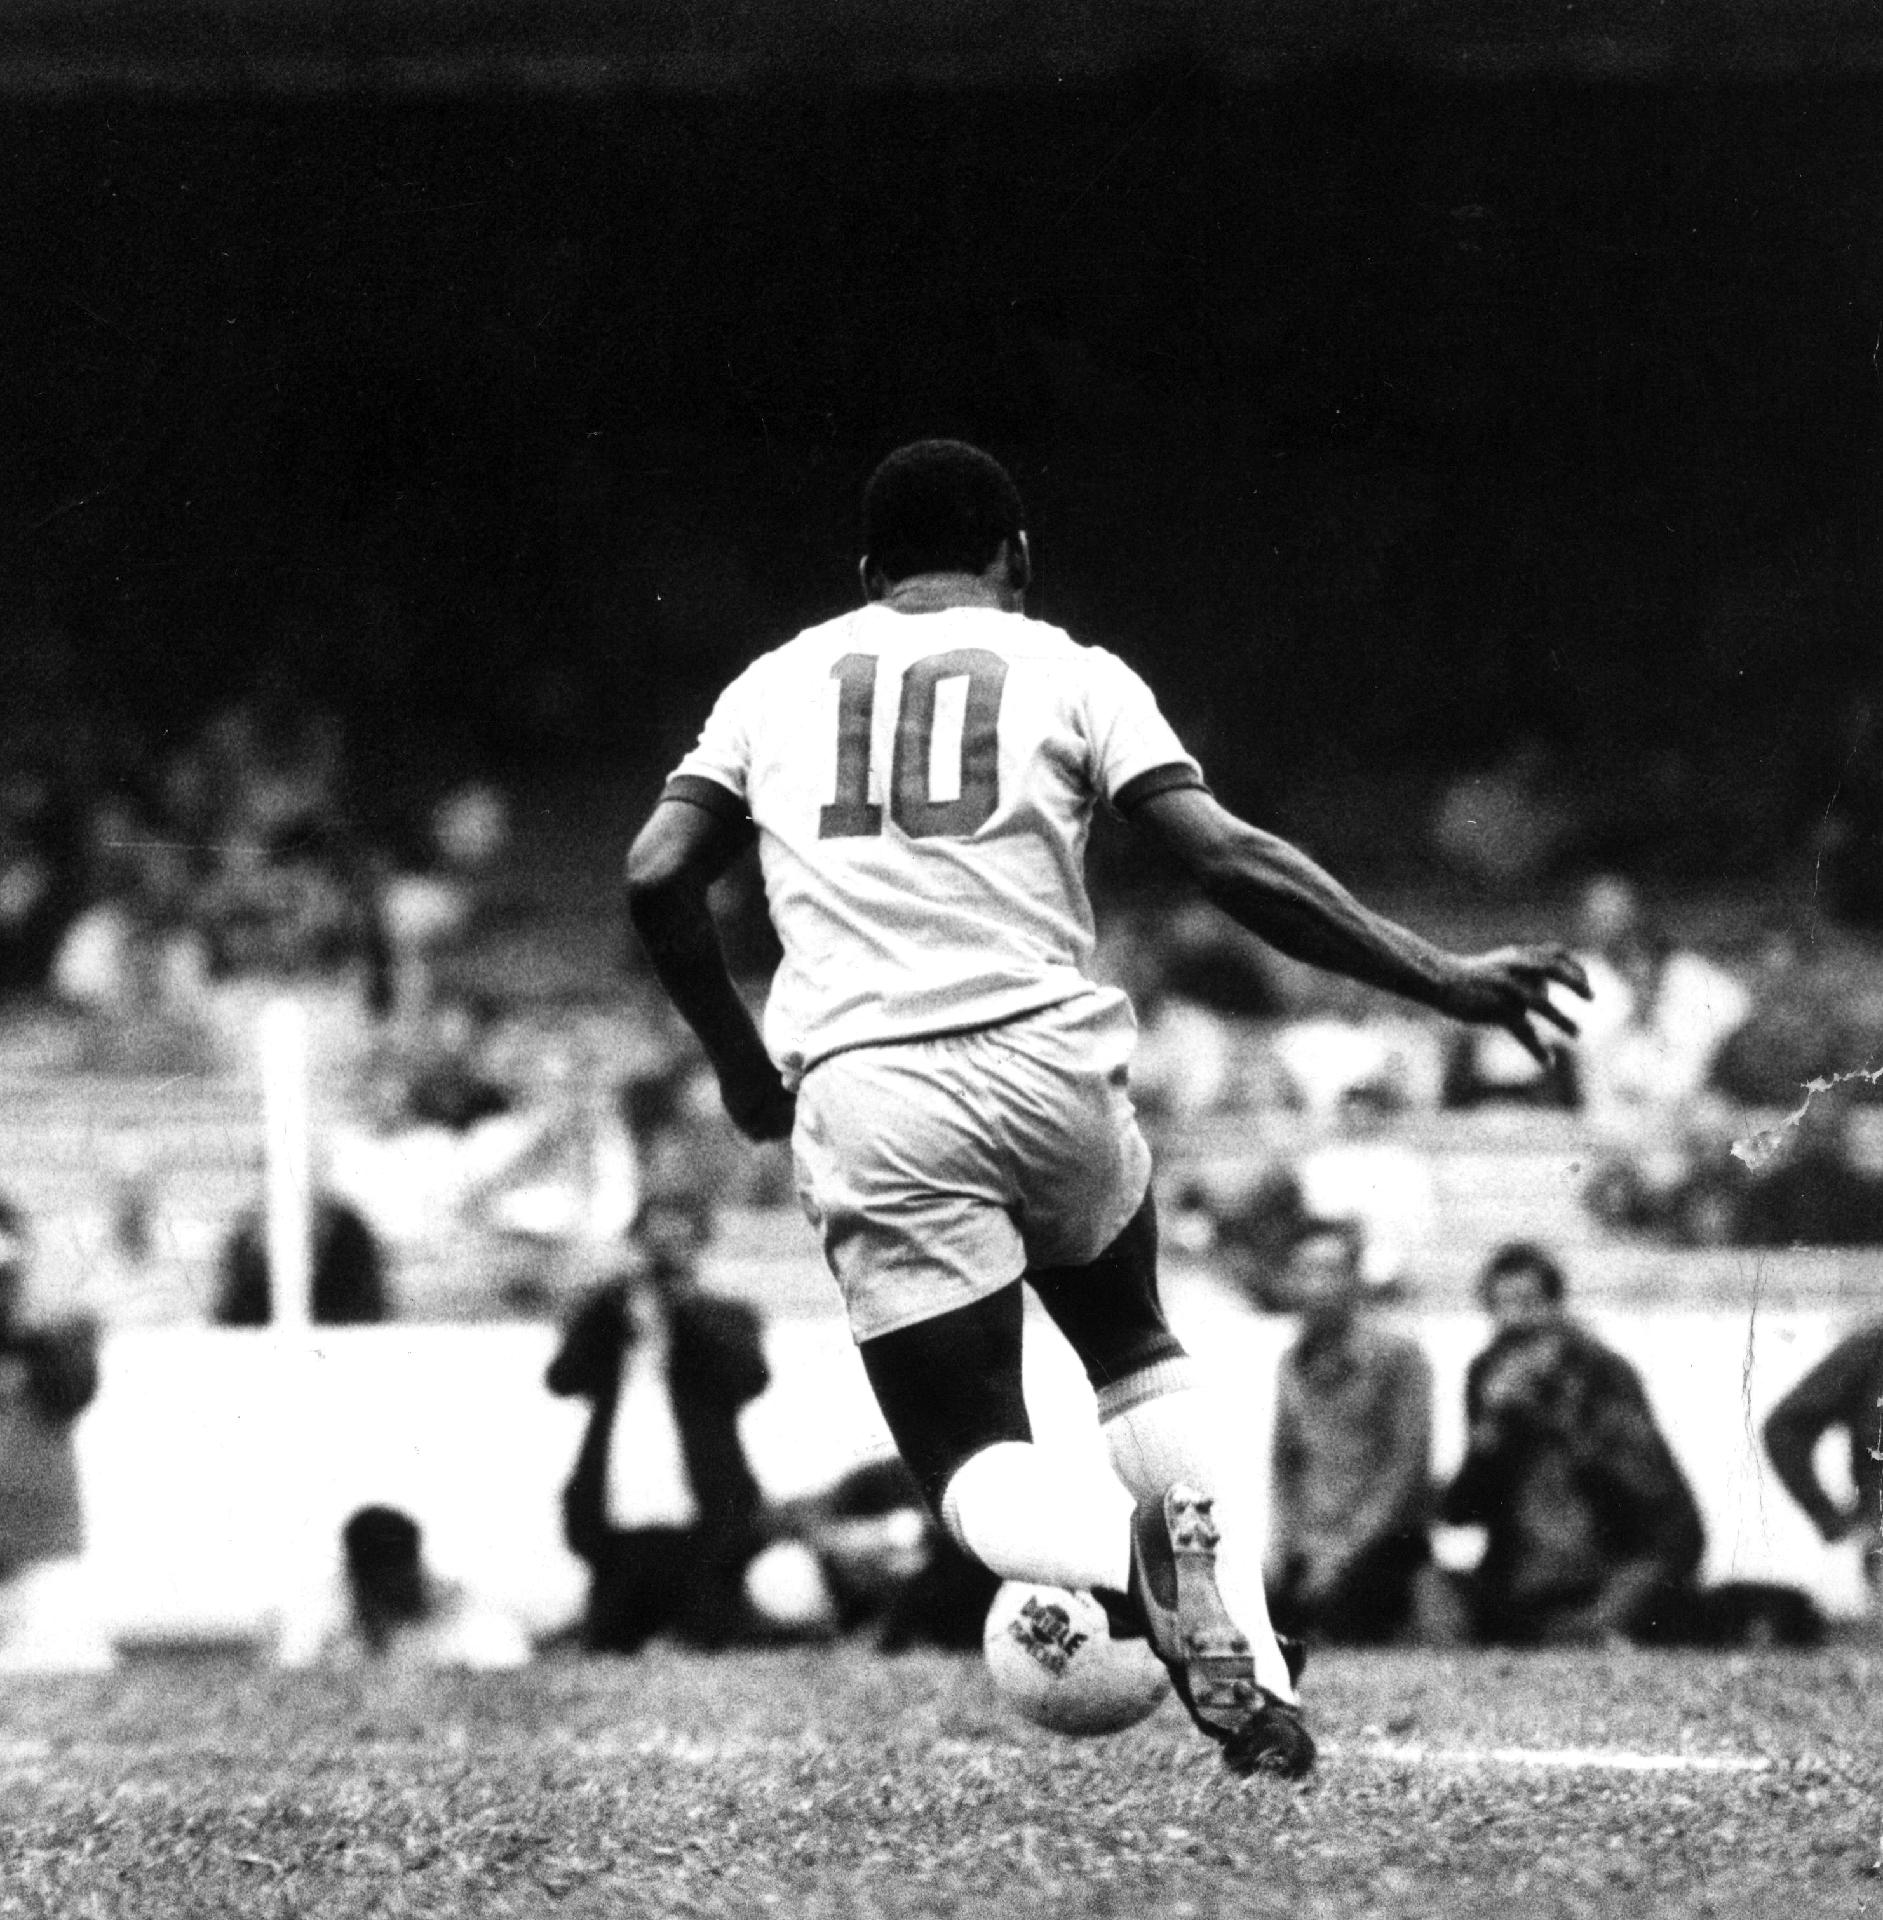 11/07/1971 - Pelé em ação no jogo amistoso entre Brasil e Áustria, no estádio do Morumbi (SP). Este foi o penúltimo jogo do craque, que marcou sua despedida pelos campos de São Paulo, vestindo a camisa da Seleção. O jogo terminou empatado em 1 a 1. - Domicio Pinheiro/Estadão Conteúdo